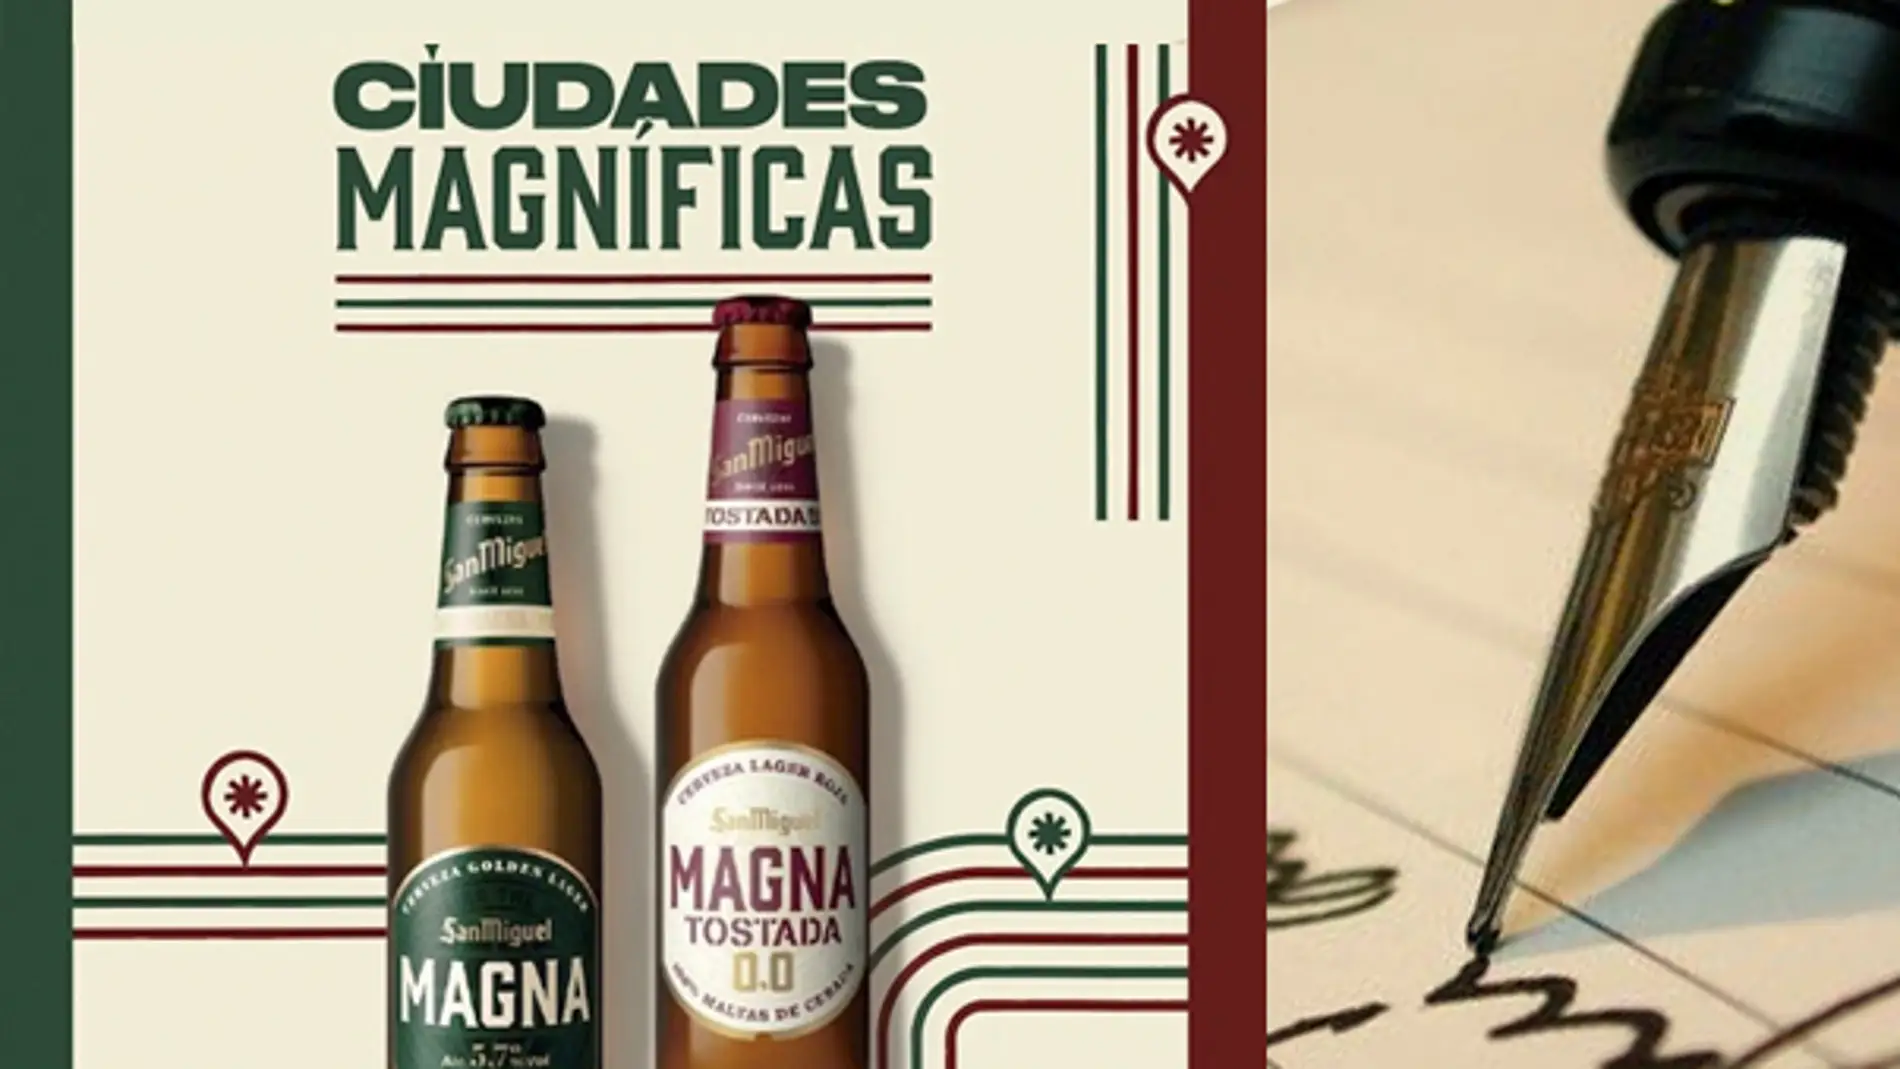 iudades Magníficas de Cervezas San Miguel te trae Primer Concurso de Microrrelato  “Málaga, Ciudad Magnífica”